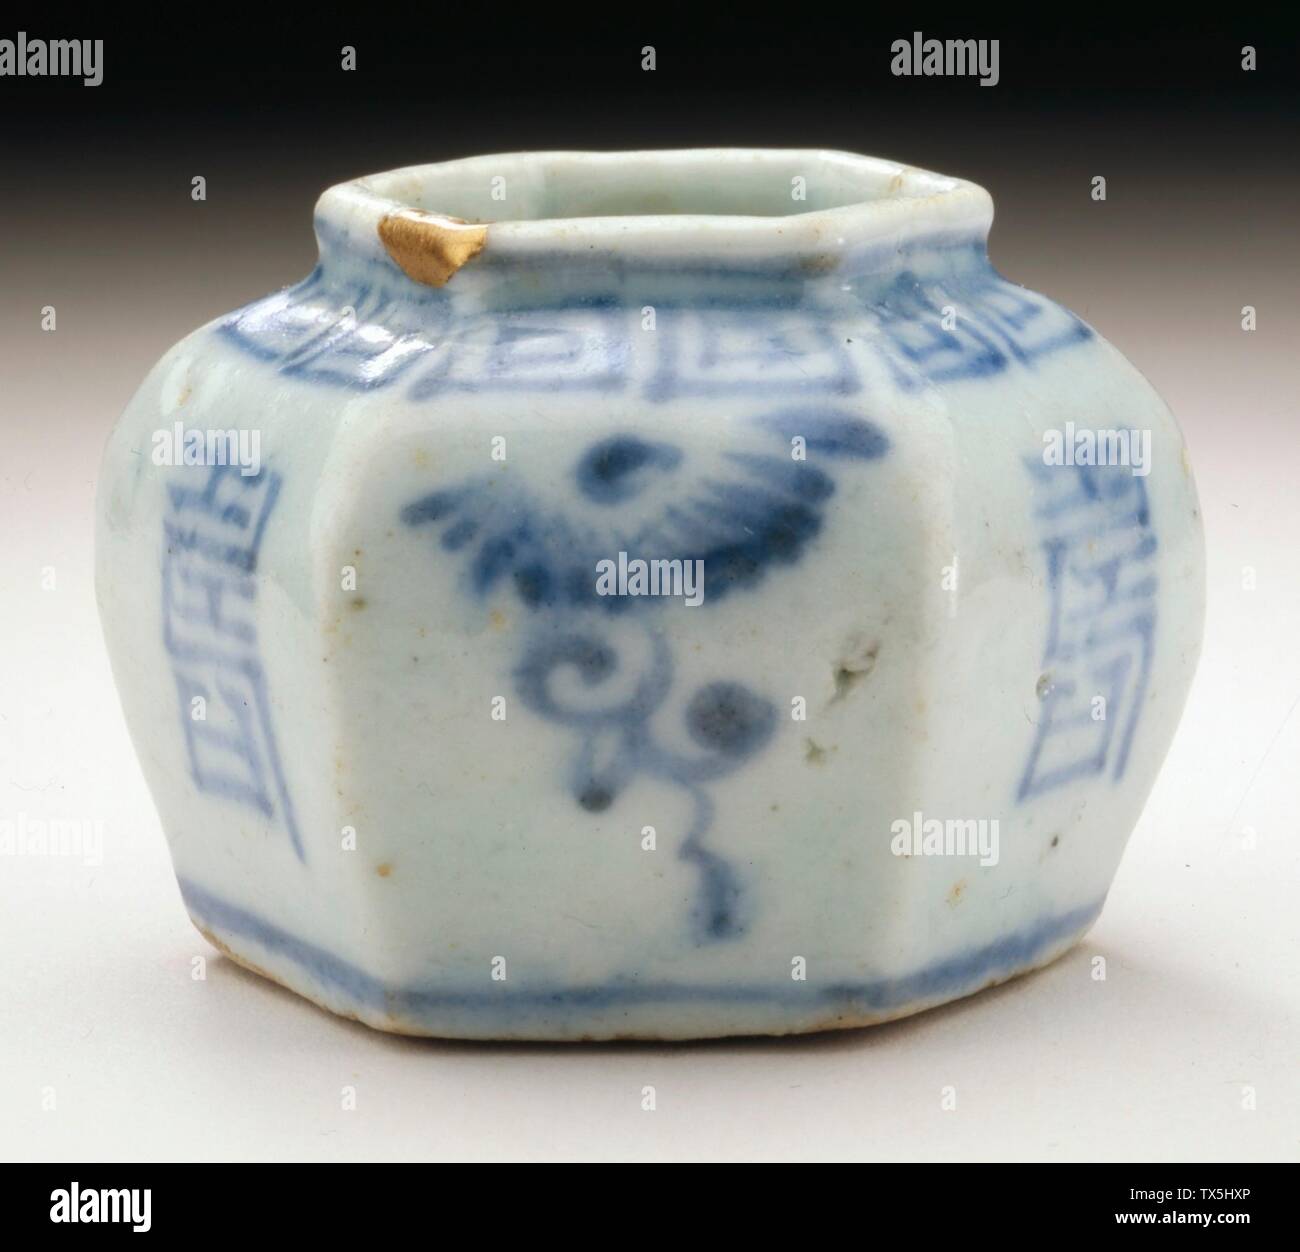 Jarlet hexagonal con Aerosoles florales y Caracteres de longevidad (su); Corea, Corea, dinastía Joseon (1392-1910), Muebles del siglo 18; porcelana moldeada con decoración pintada de azul bajo esmalte transparente 1 1/4 x 1 3/4 pulg. (3.18 x 4.45 cm) Comprado con Museum Funds (M. 2003-0.15.105) Korean Art; fecha del siglo XVIII QS:P571,+1750-00-00T00:00:00Z/7; Foto de stock